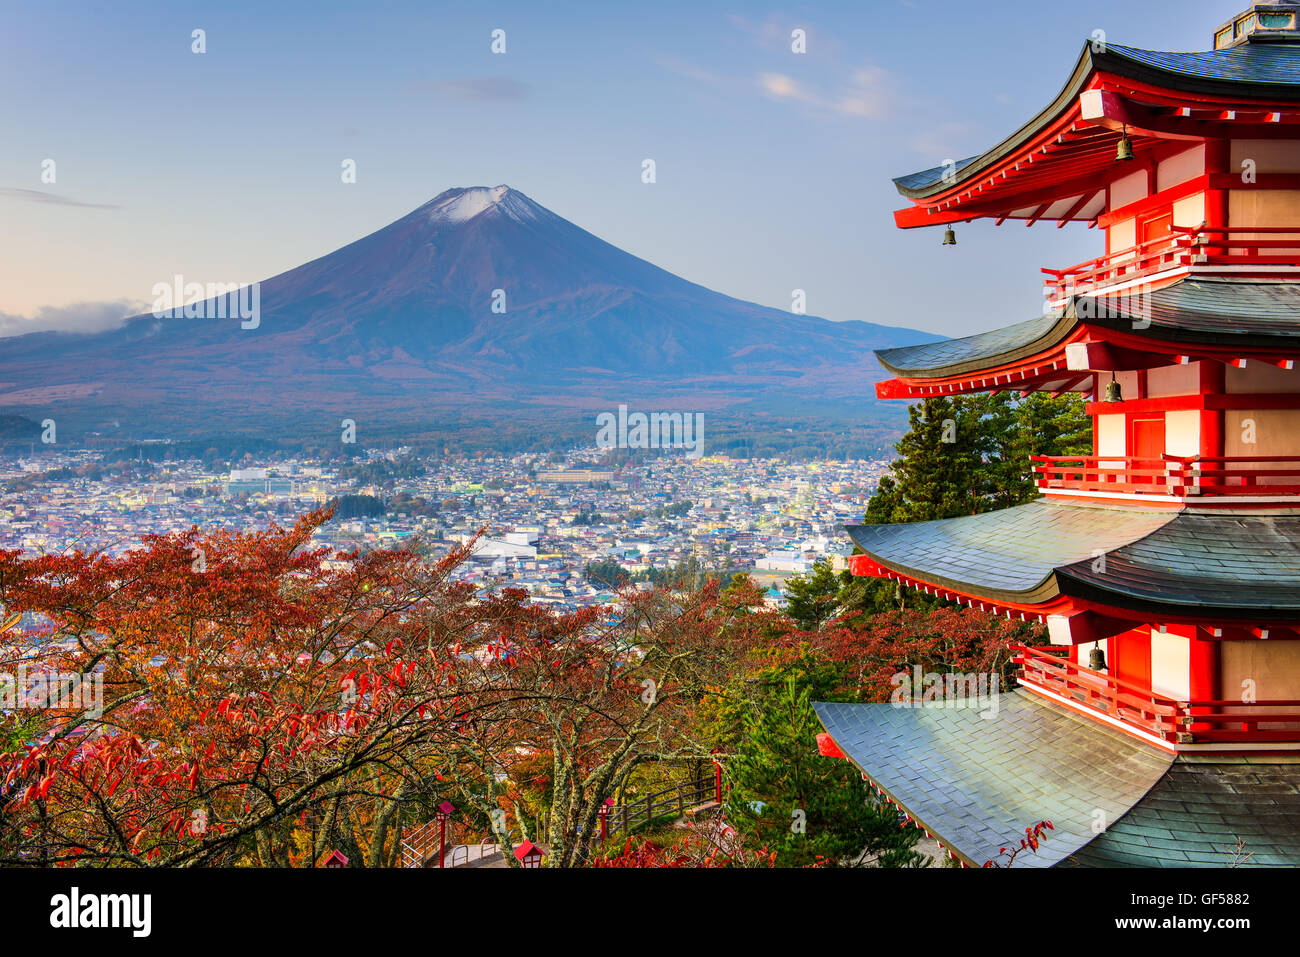 Mt. Fuji, Japan from Chureito Pagoda in autumn. Stock Photo